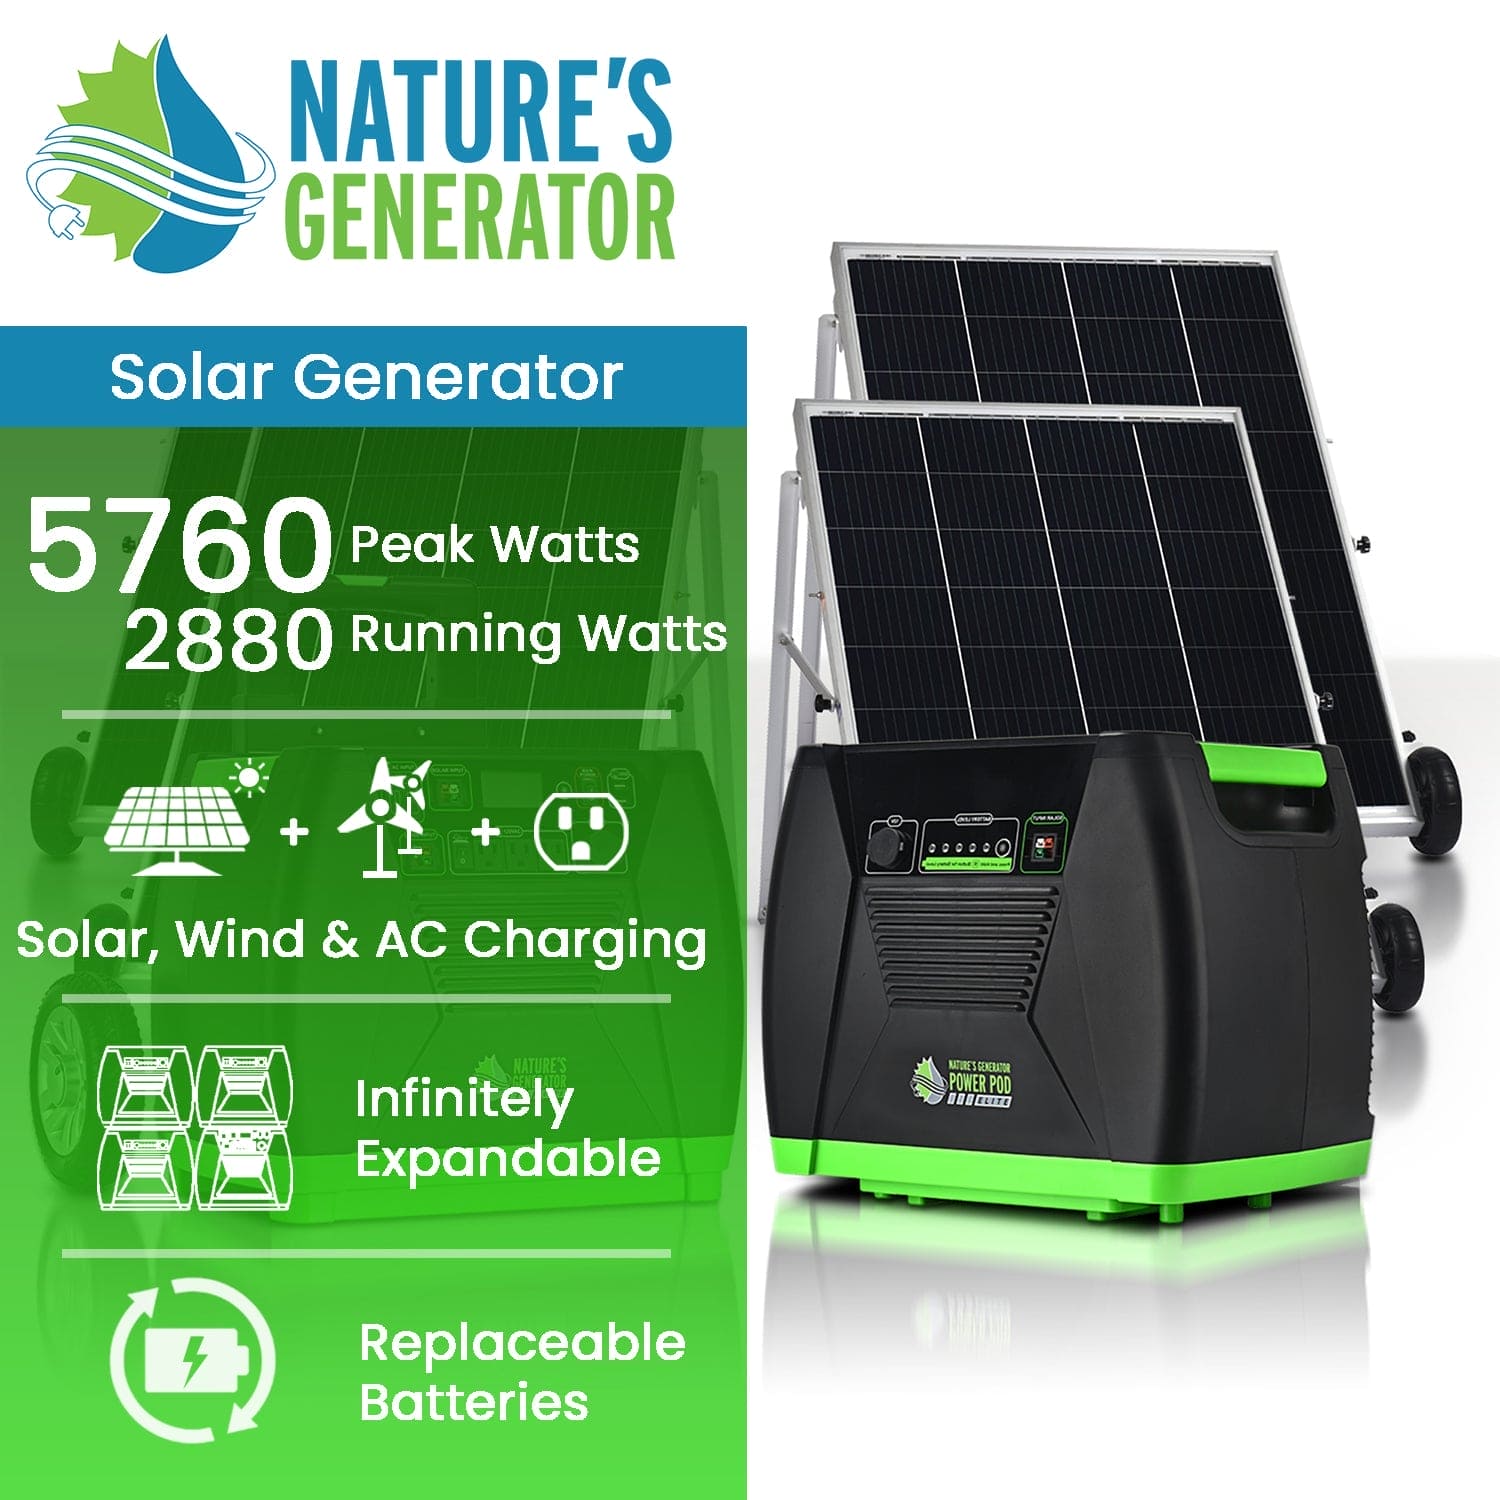 Nature's Generator Elite - Platinum System - Nature's Generator